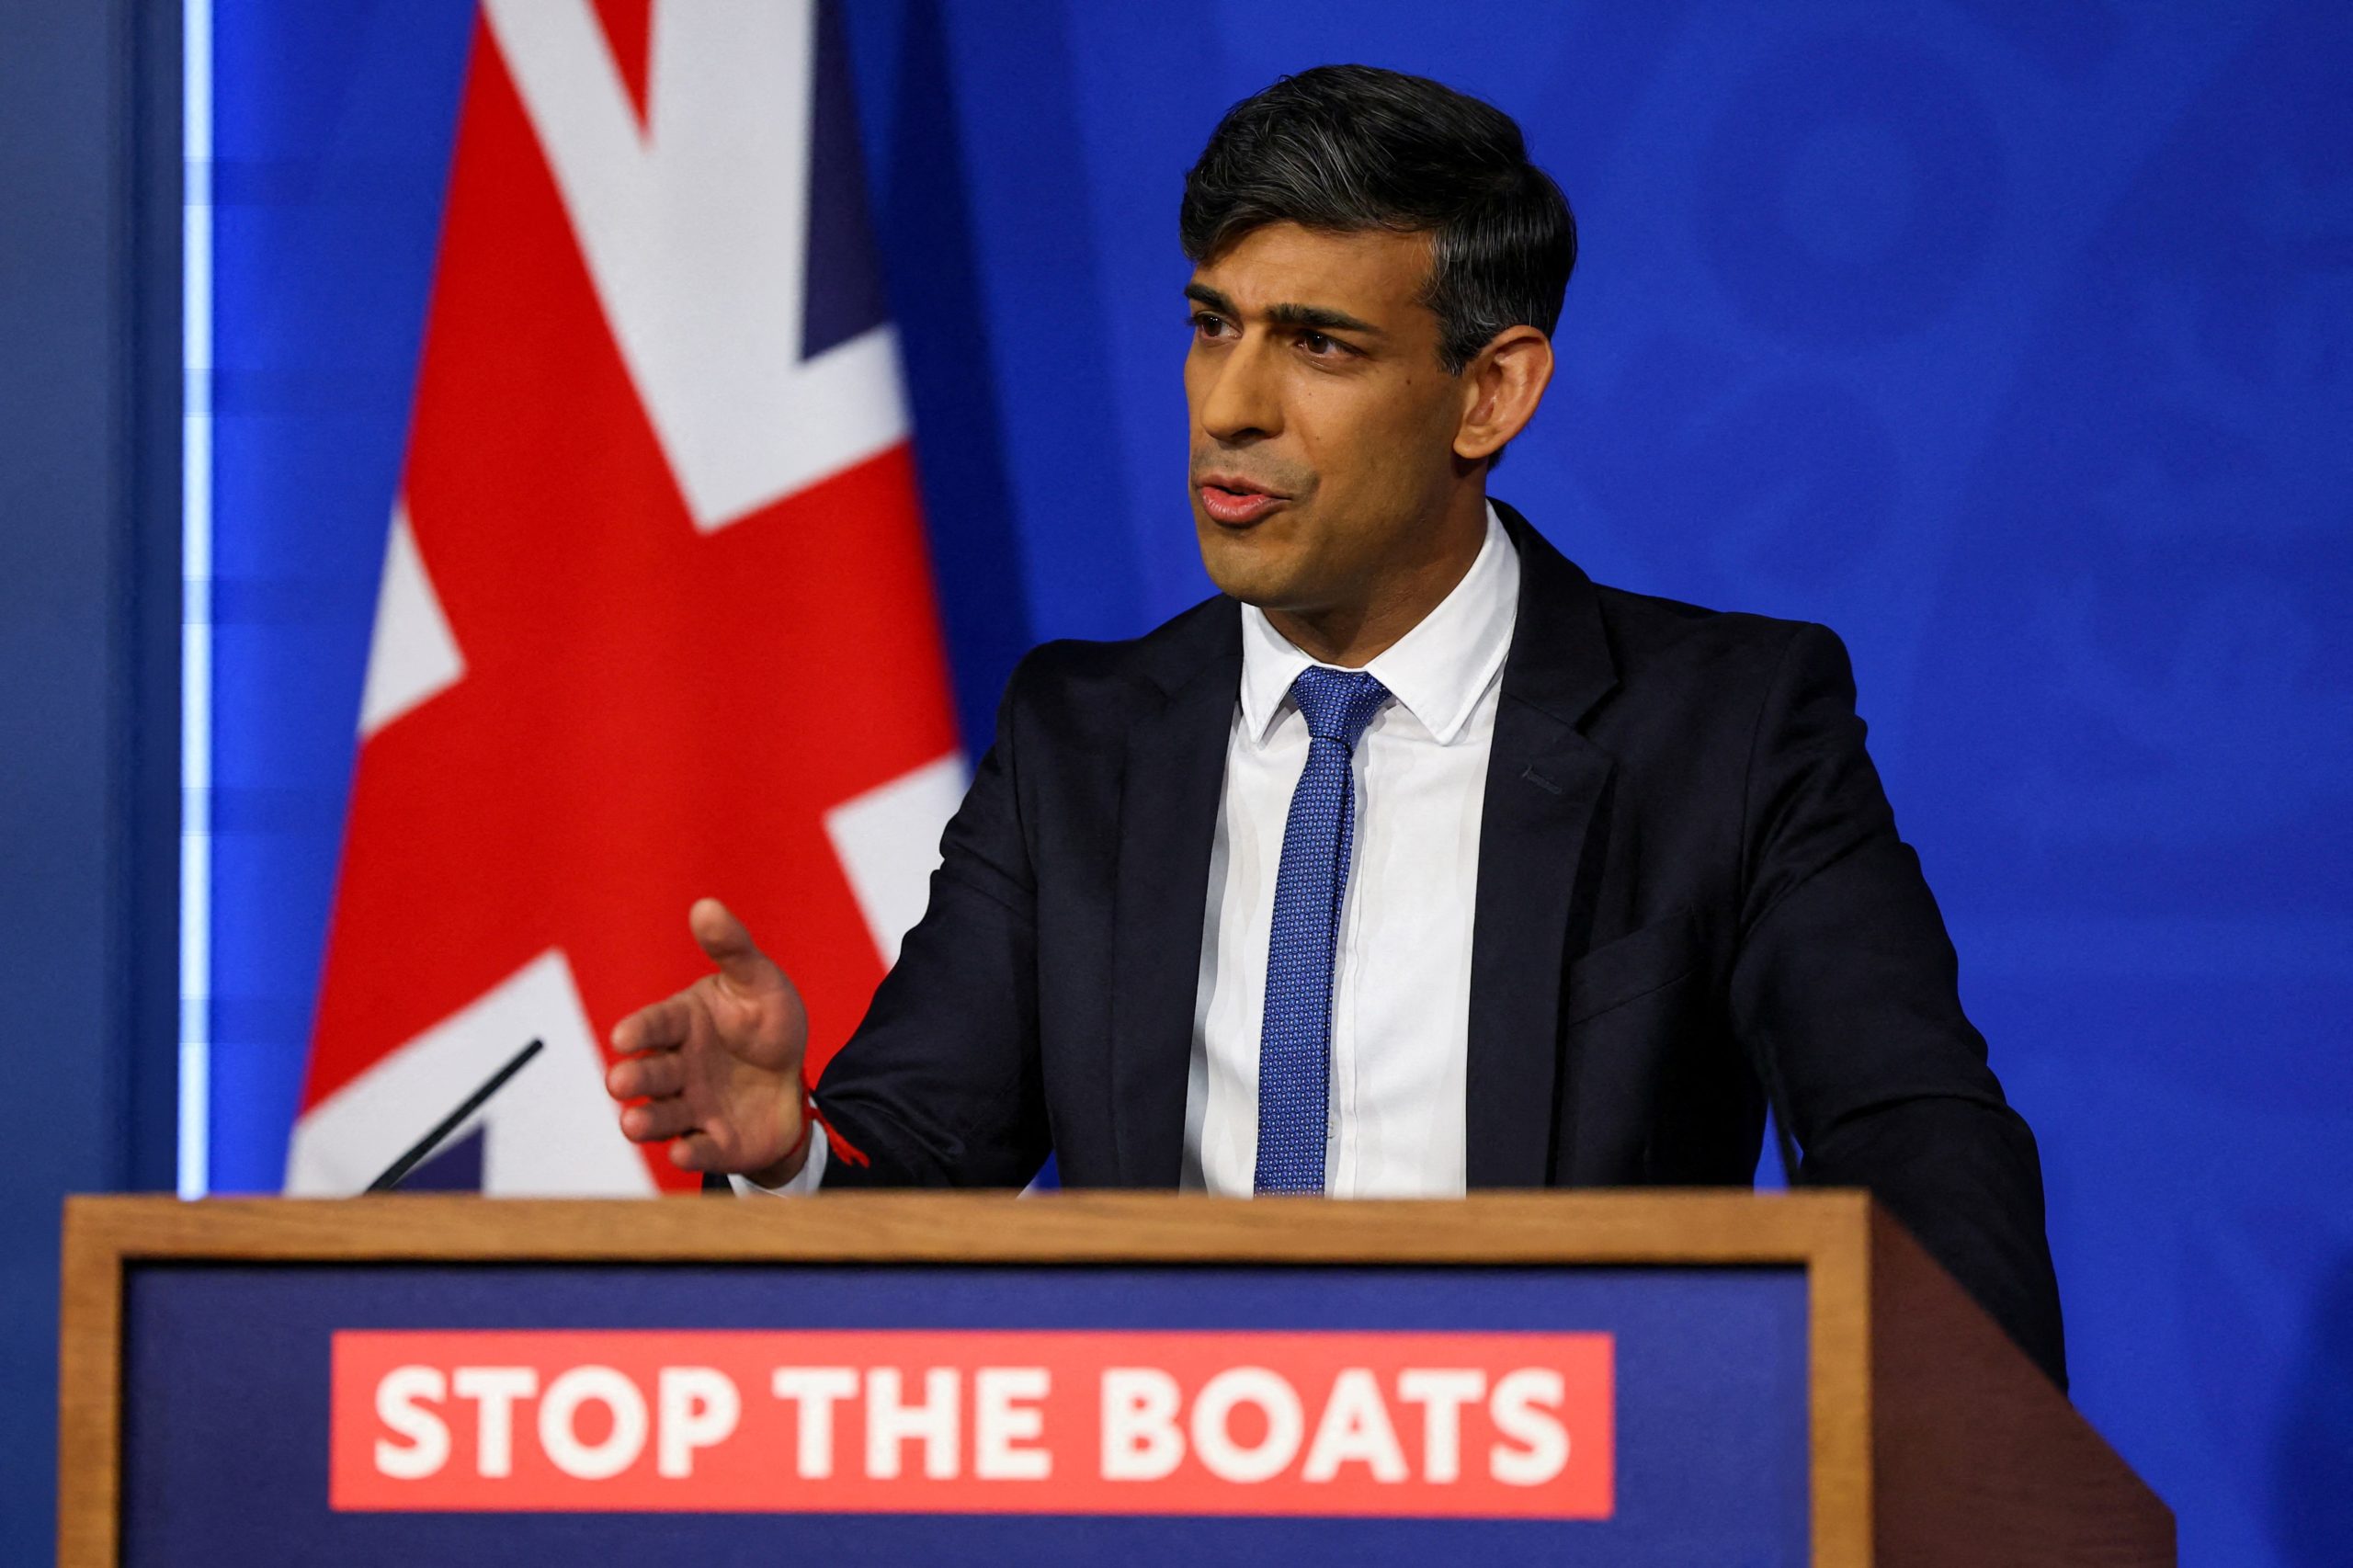 El primer ministro se comprometió a detener los botes que cruzan el Canal